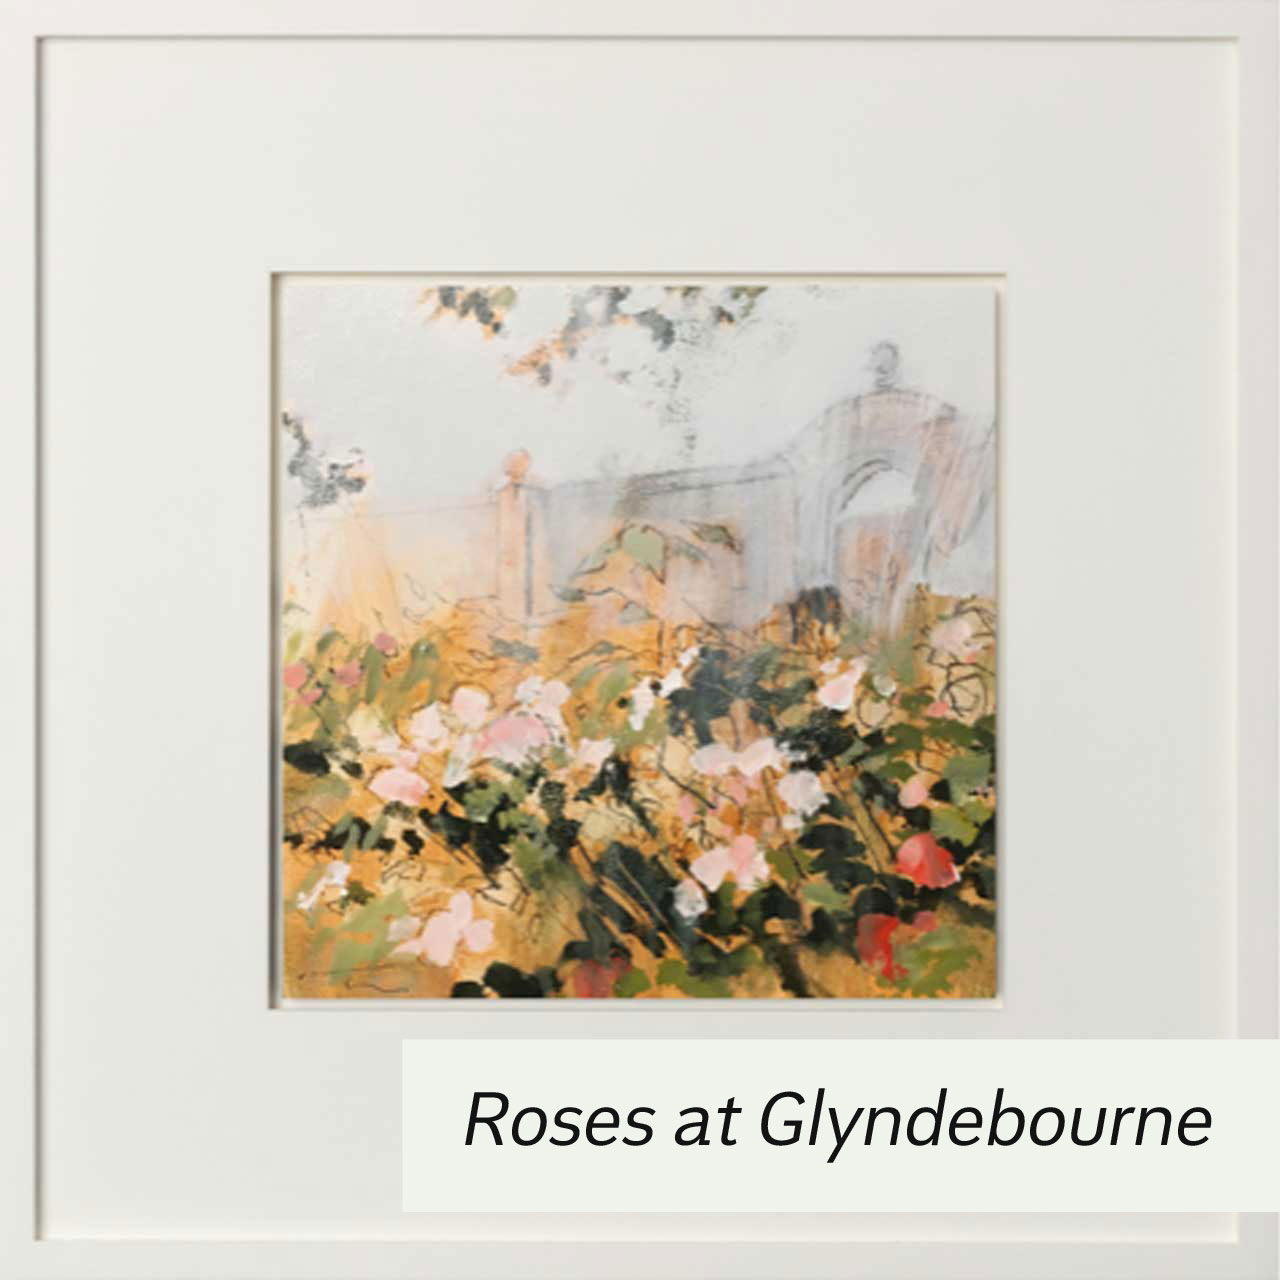 Roses at Glyndebourne by Tom Homewood